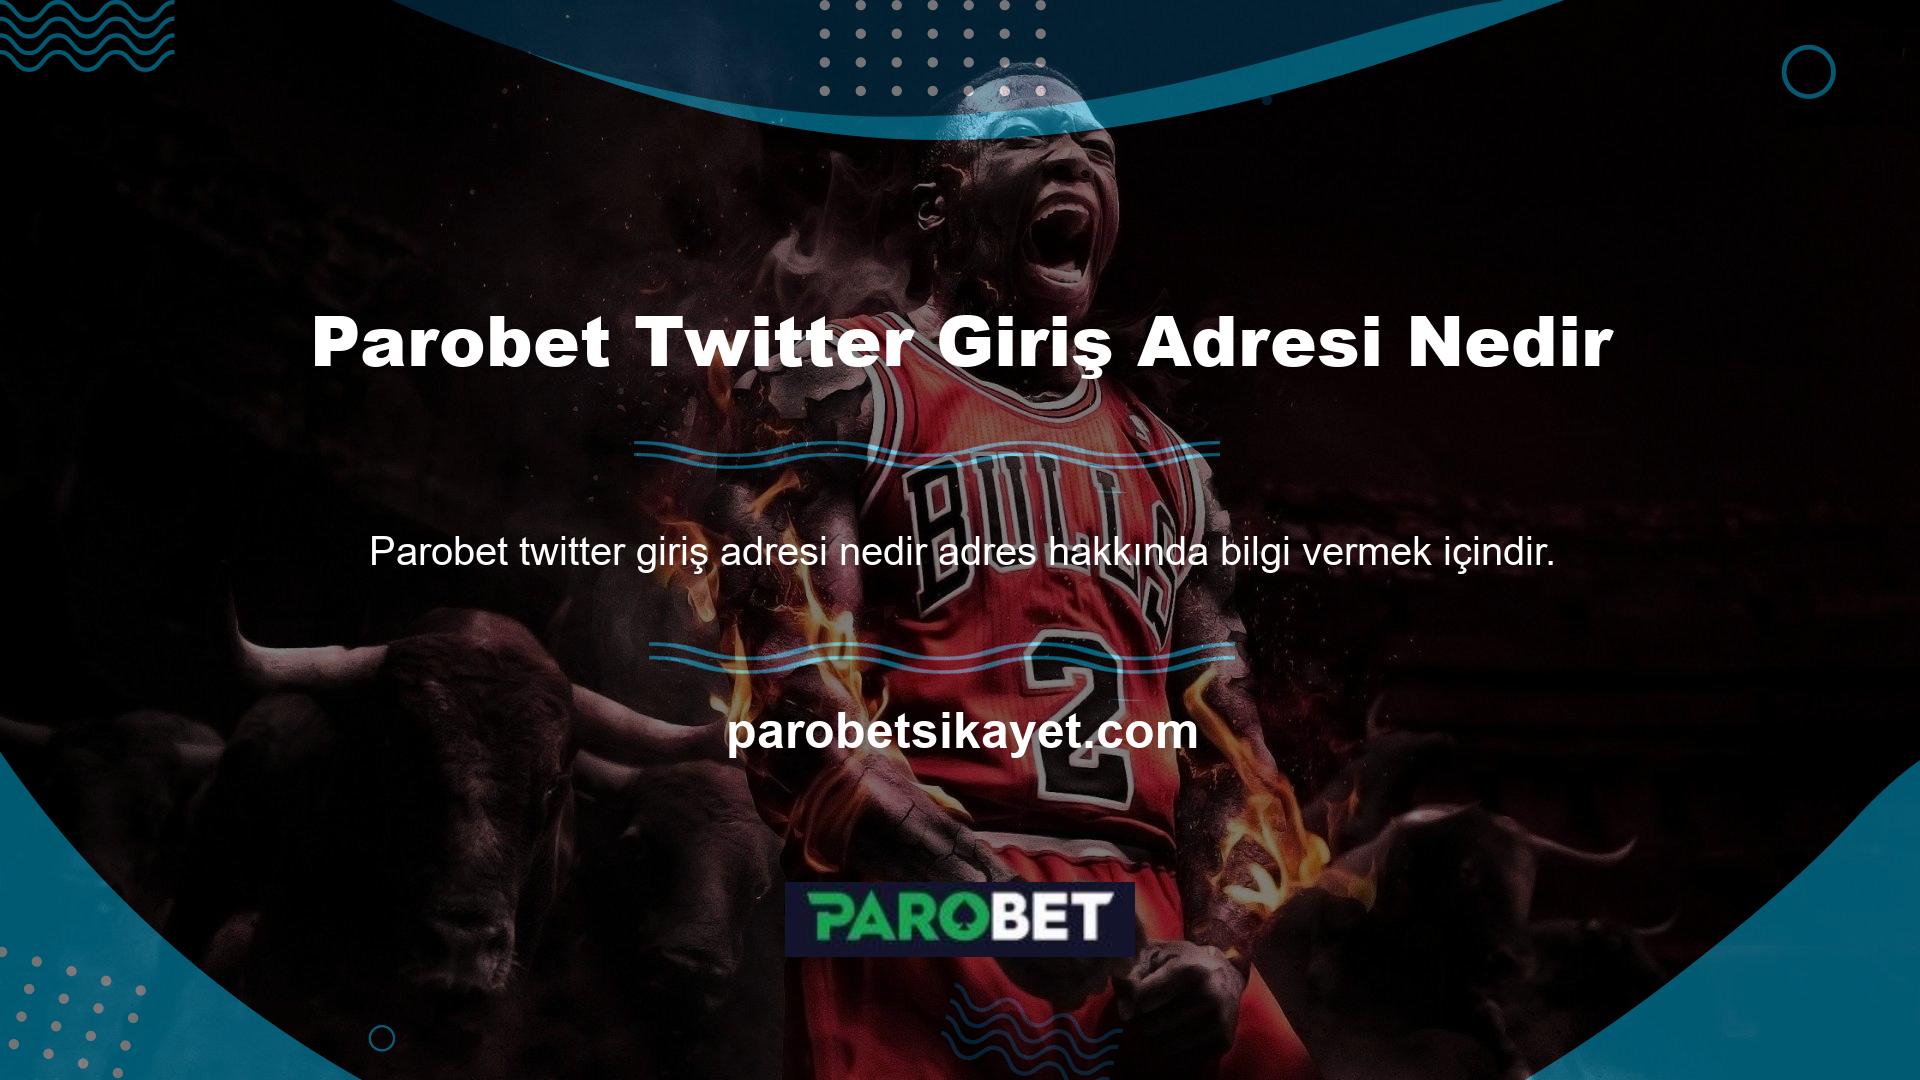 Parobet size Twitter profilinizde ziyaret ettiğiniz son web sitesinin adresini söyler